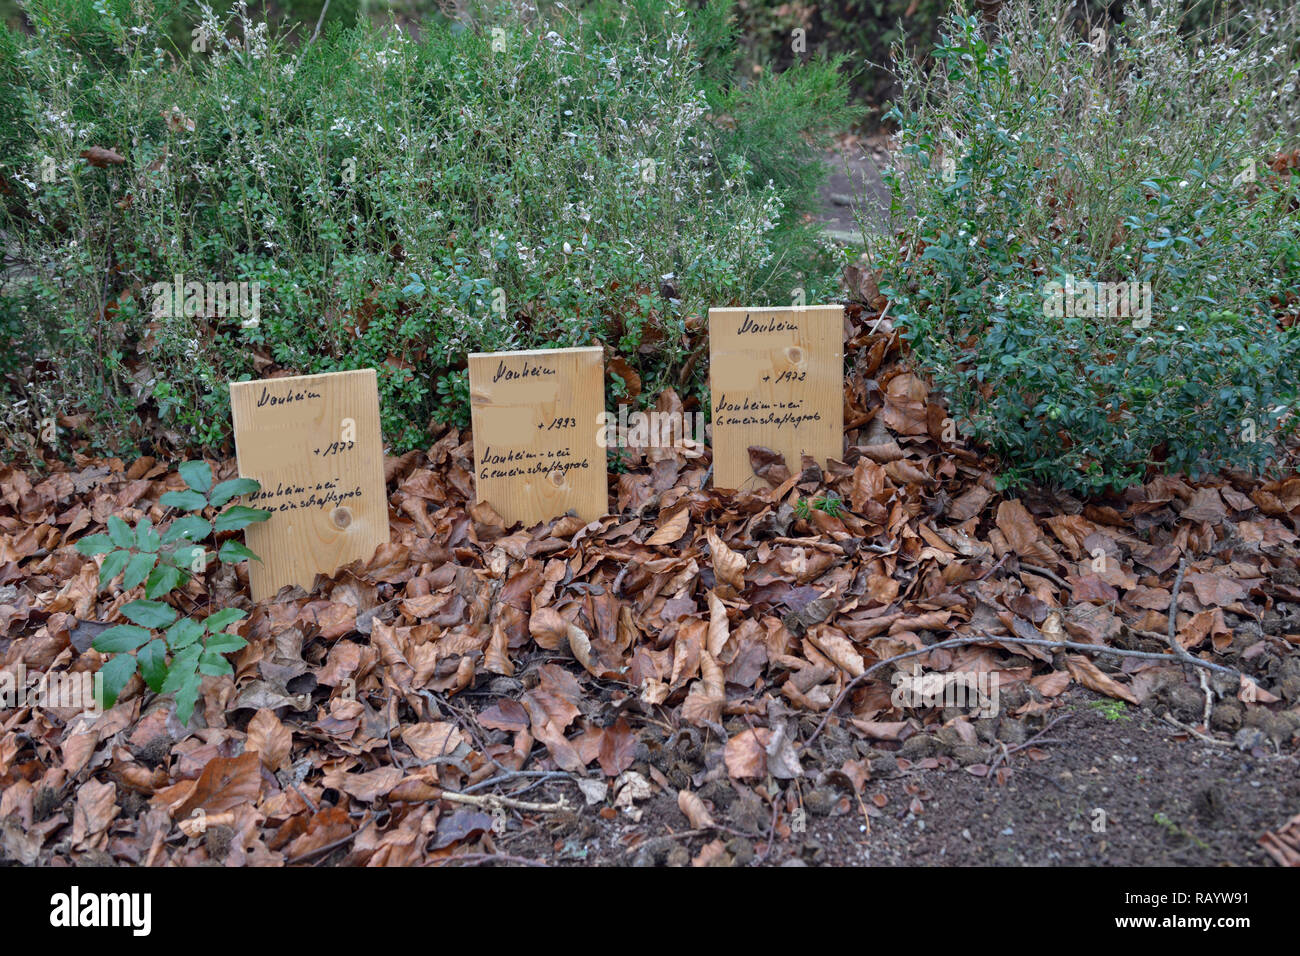 Dezember 2018, Kerpen-Manheim : En mémoire de l'enterré de tombes de l'ancien cimetière de Manheim pour donner lieu à l'extension de la surface de lignite Banque D'Images